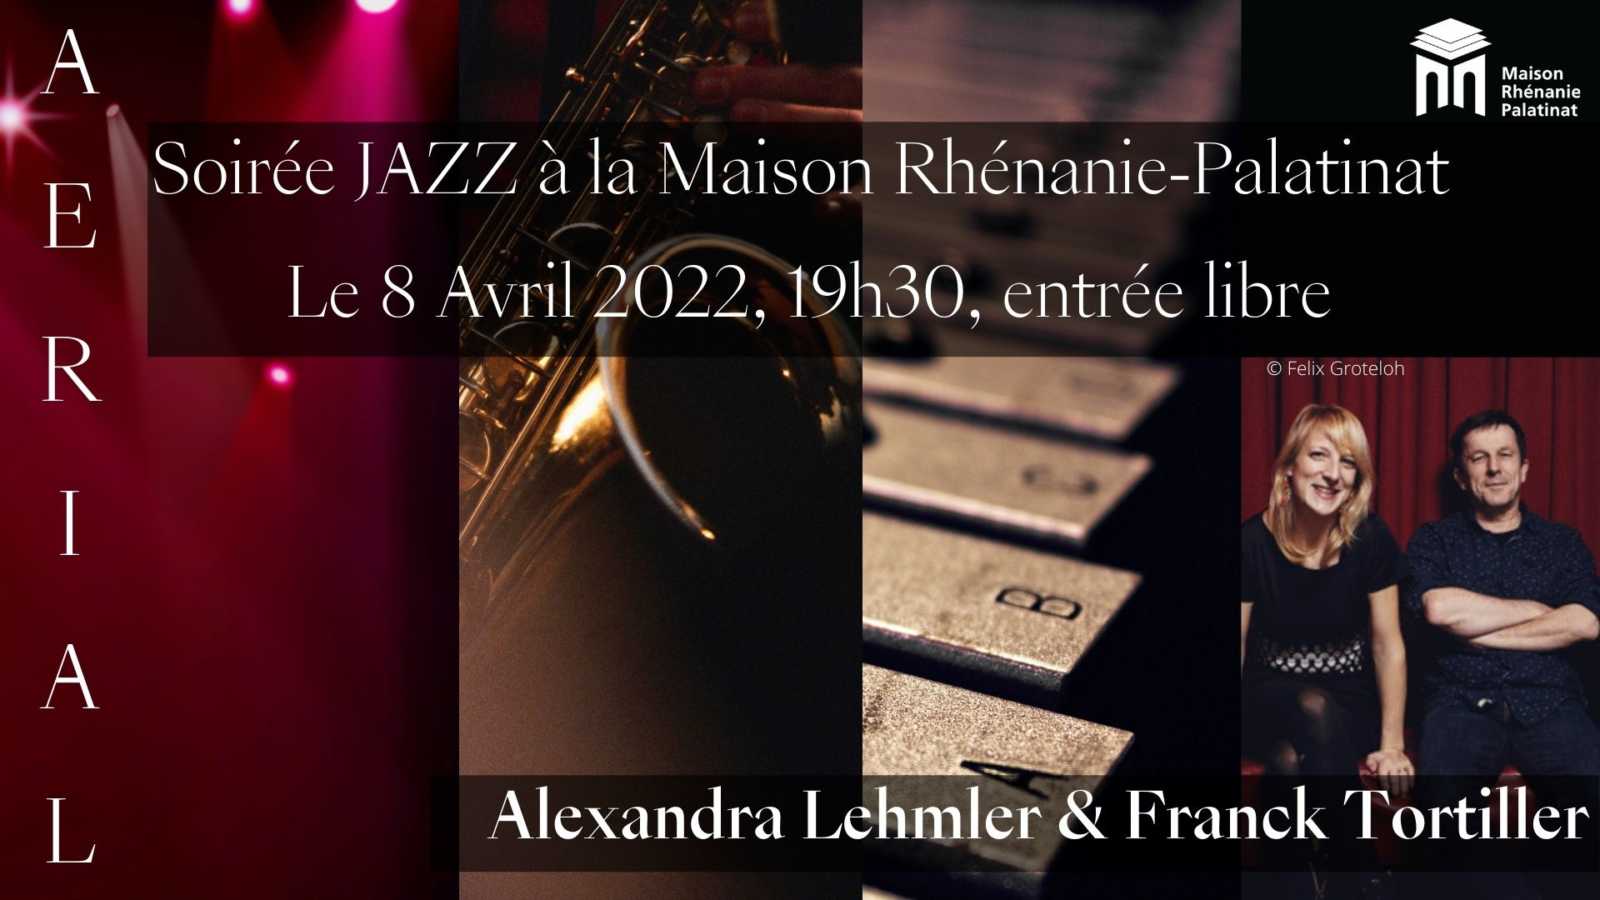 Vendredi 8 avril 2022 à 19h30 : Soirée Jazz Alexandra Lehmler & Franck Tortiller – AERIAL